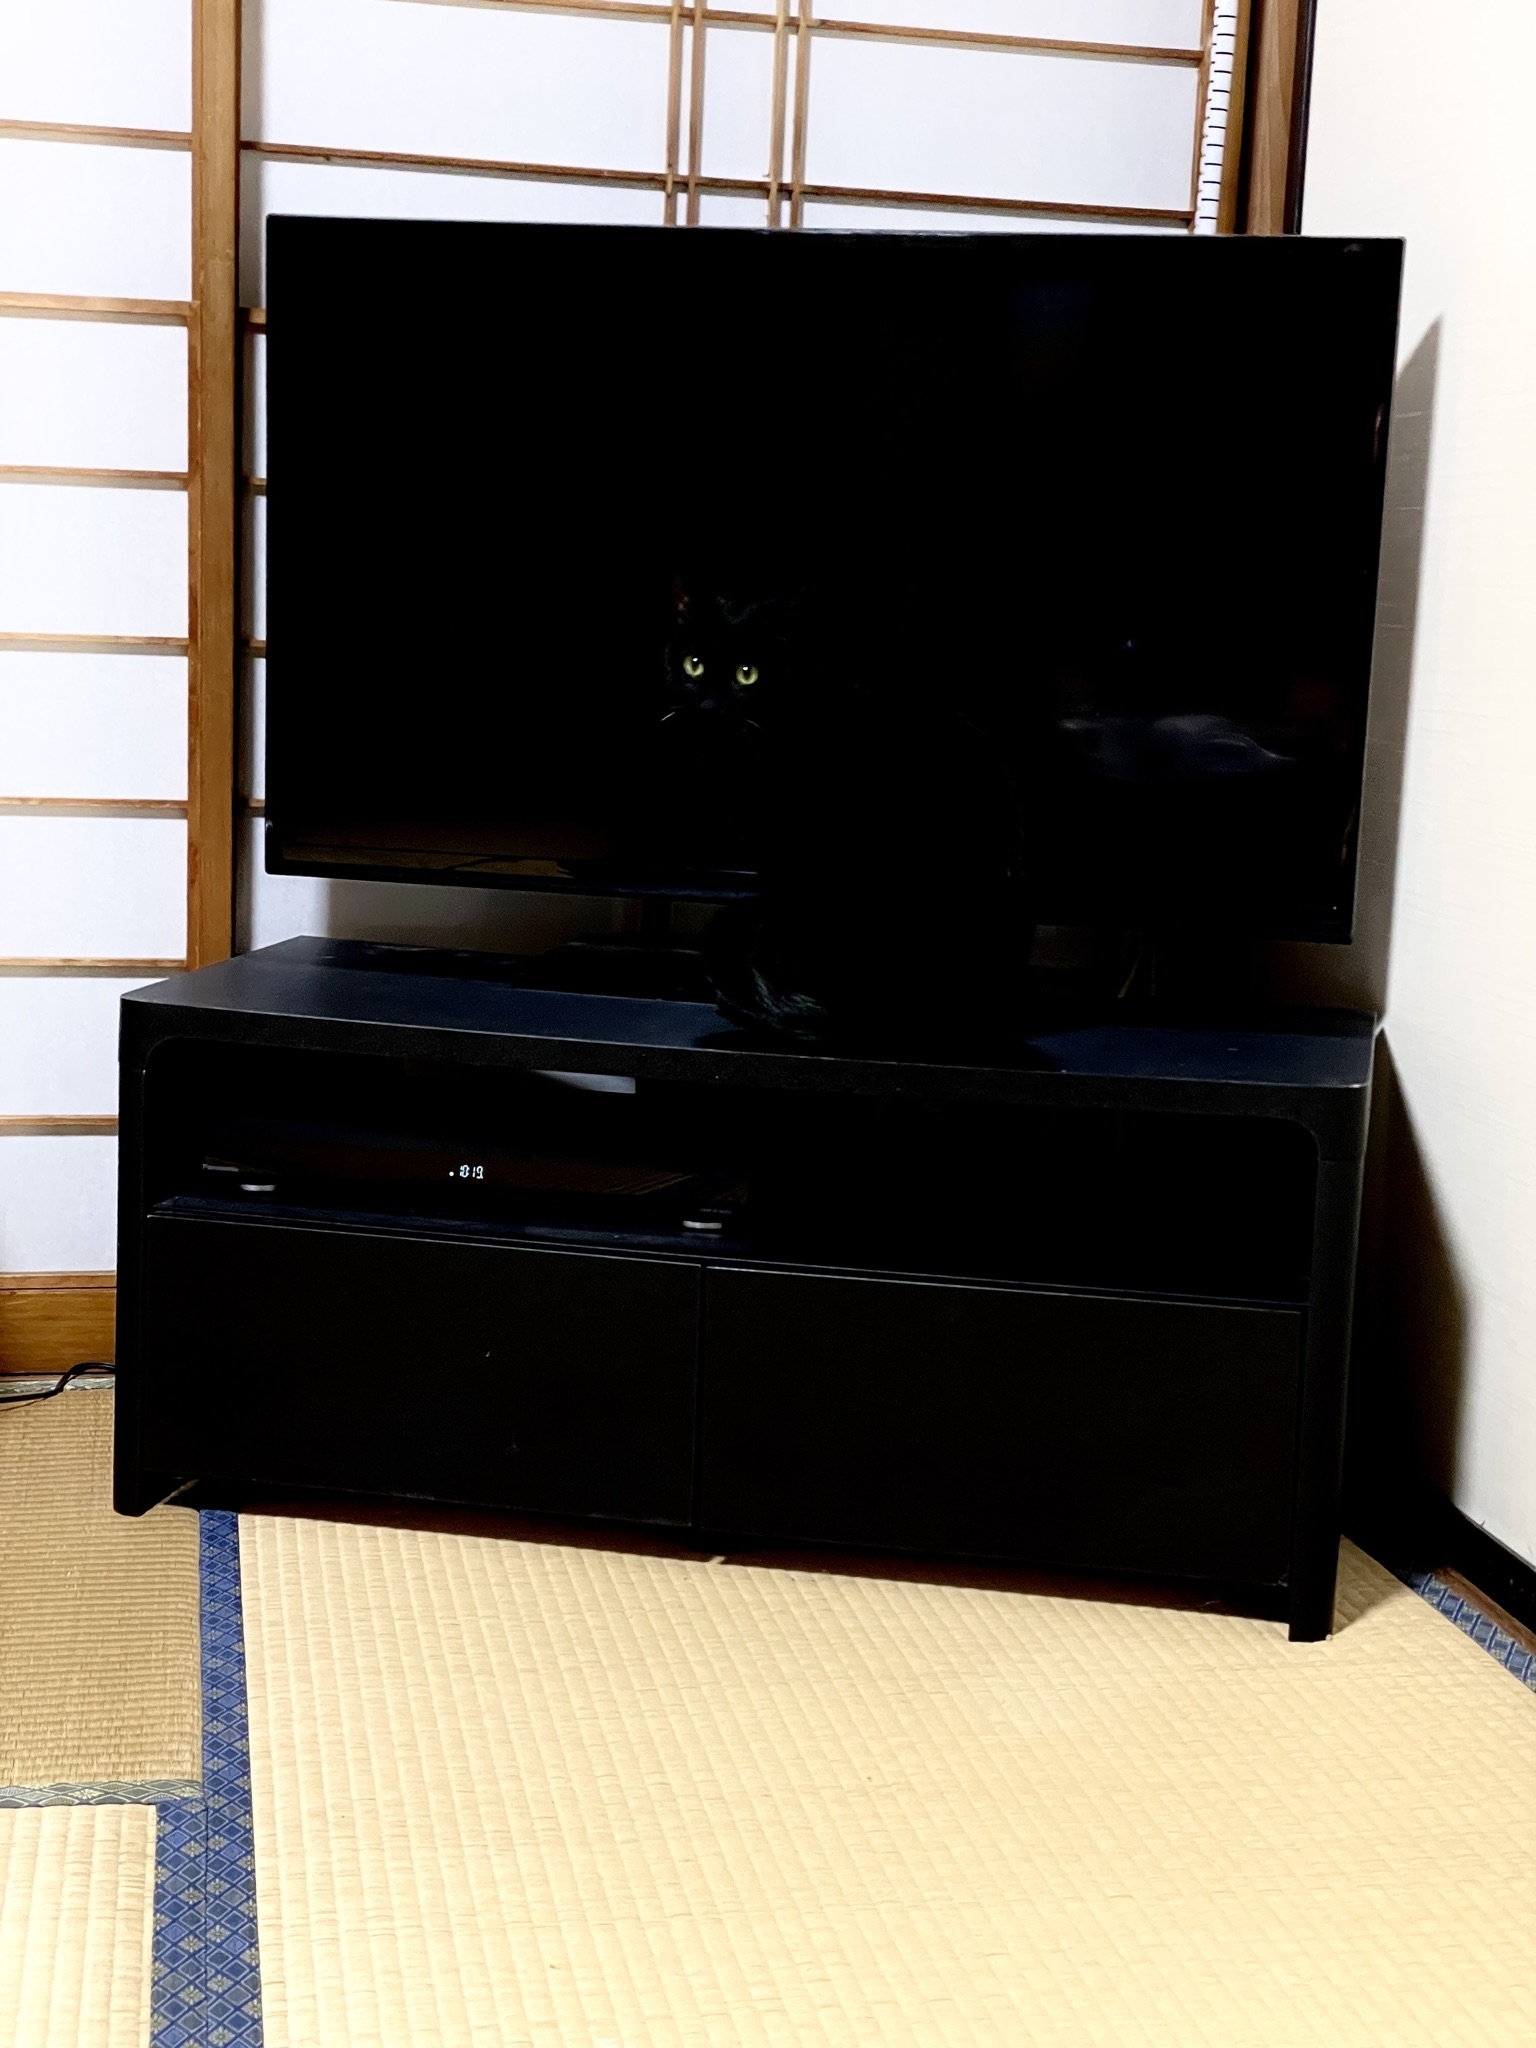 テレビの前に黒い猫